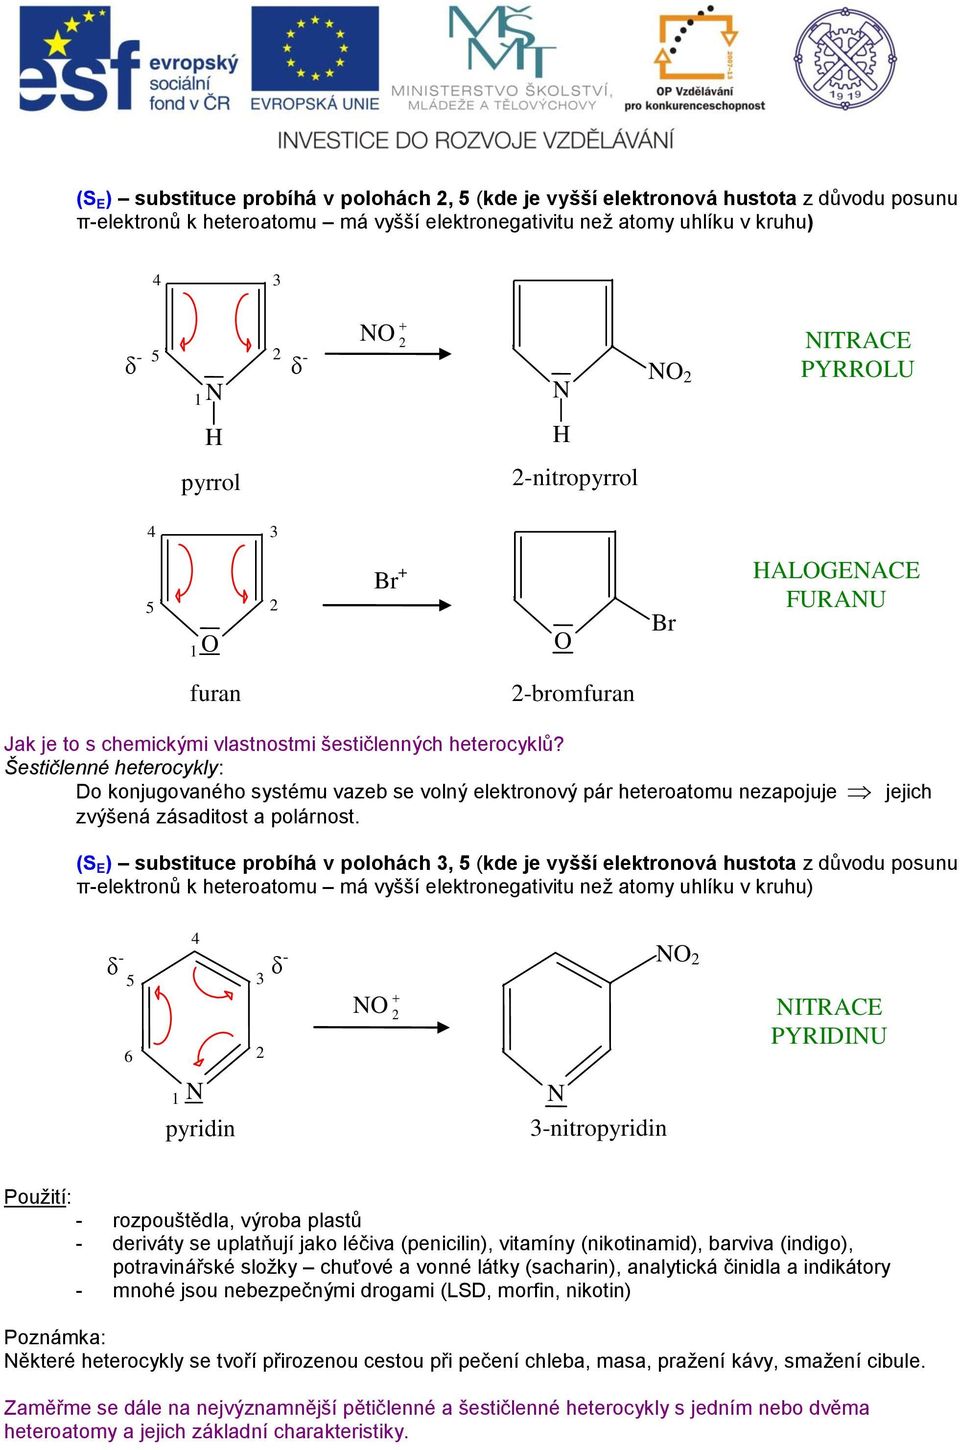 Šestičlenné heterocykly: Do konjugovaného systému vazeb se volný elektronový pár heteroatomu nezapojuje jejich zvýšená zásaditost a polárnost.